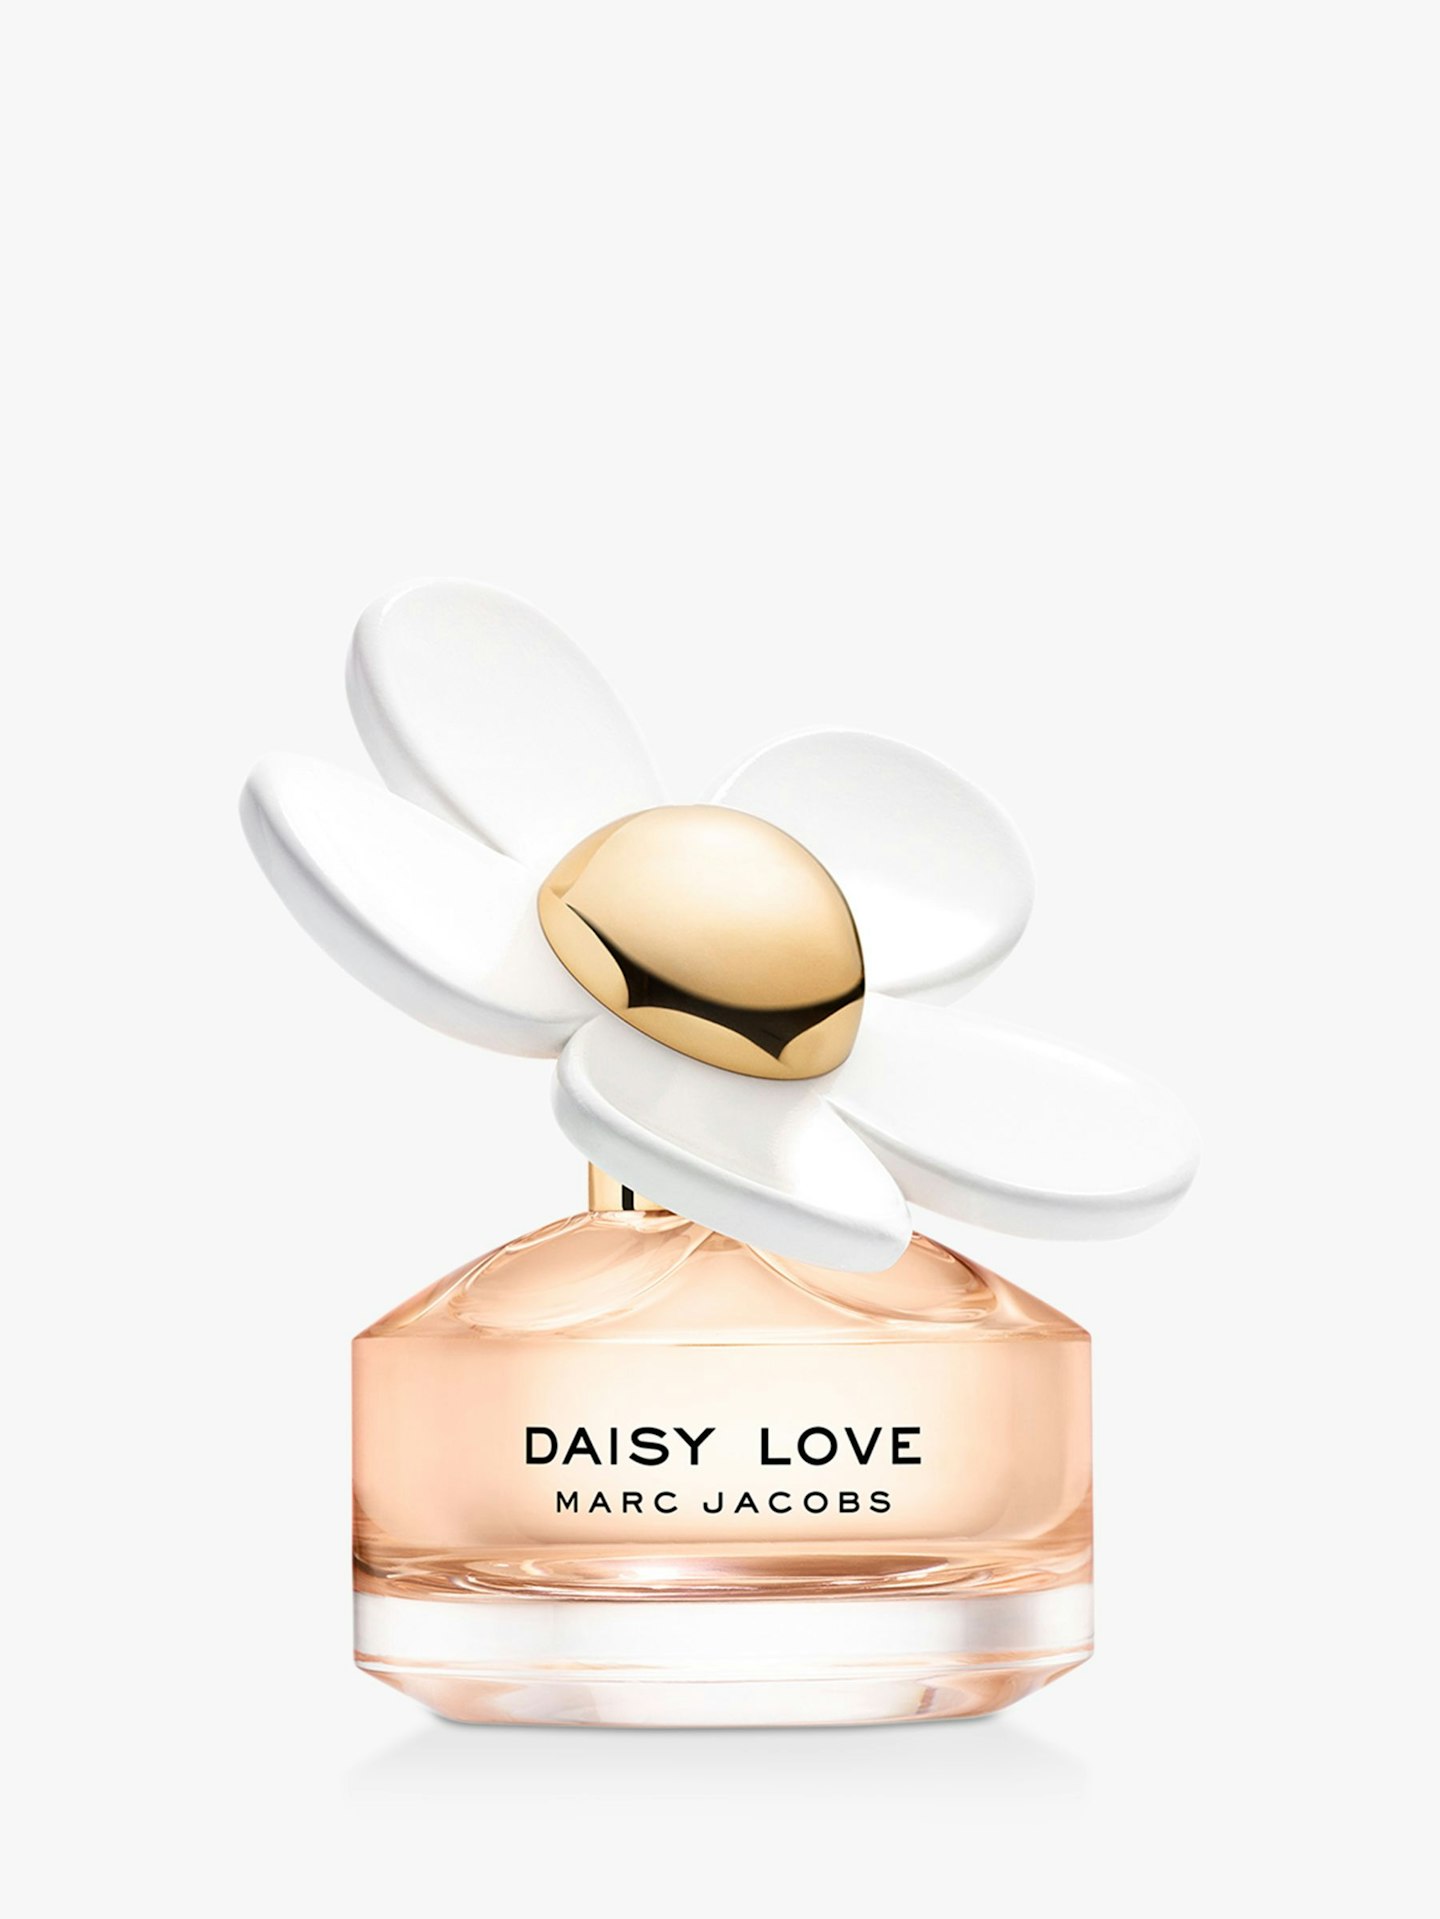 Marc Jacobs Daisy Love Perfume, £60